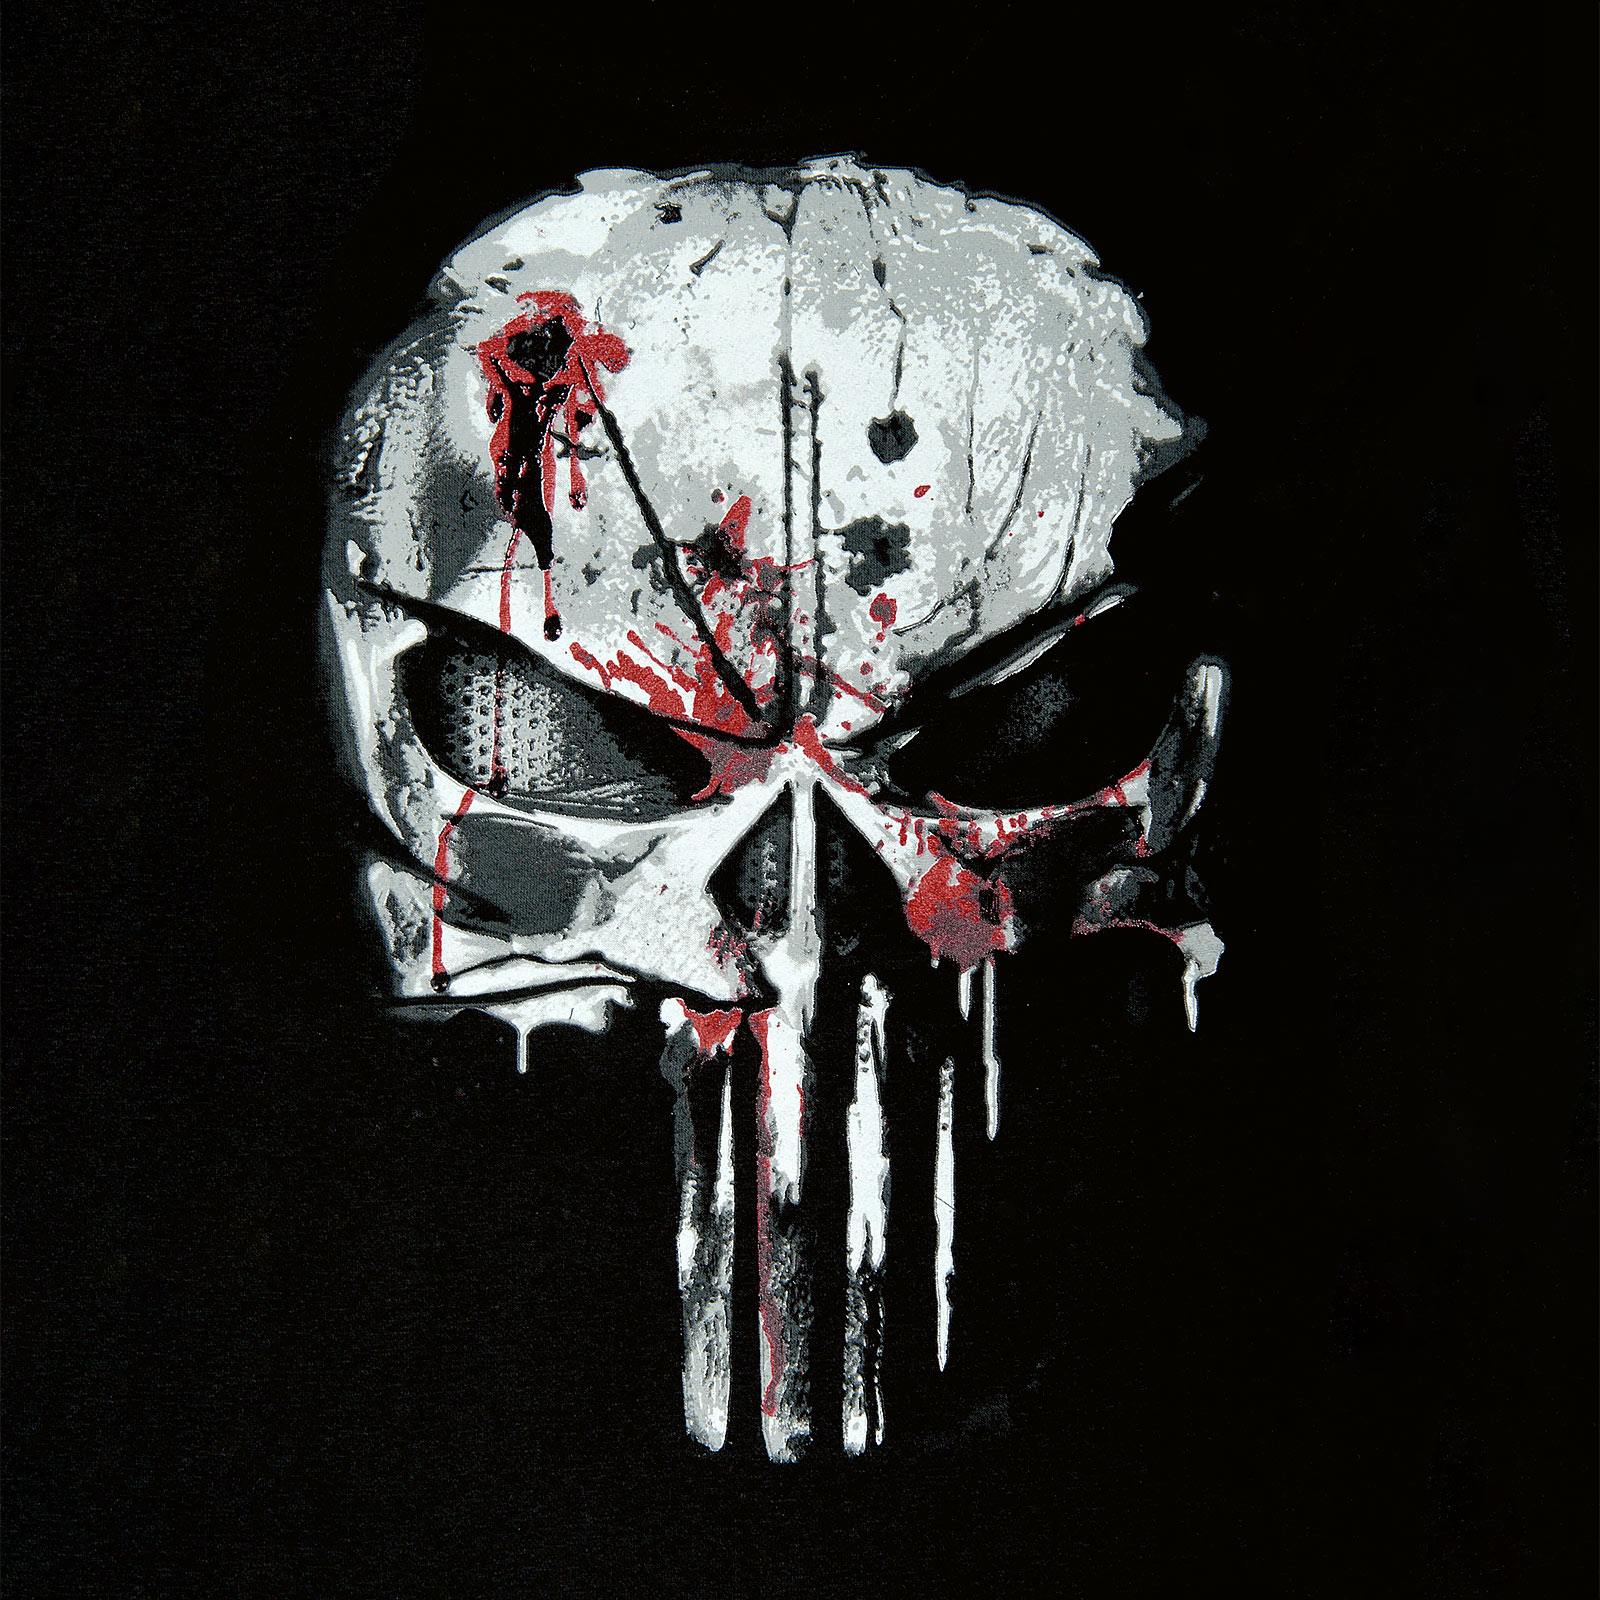 Punisher - Blood Skull College Jacke schwarz-weiß